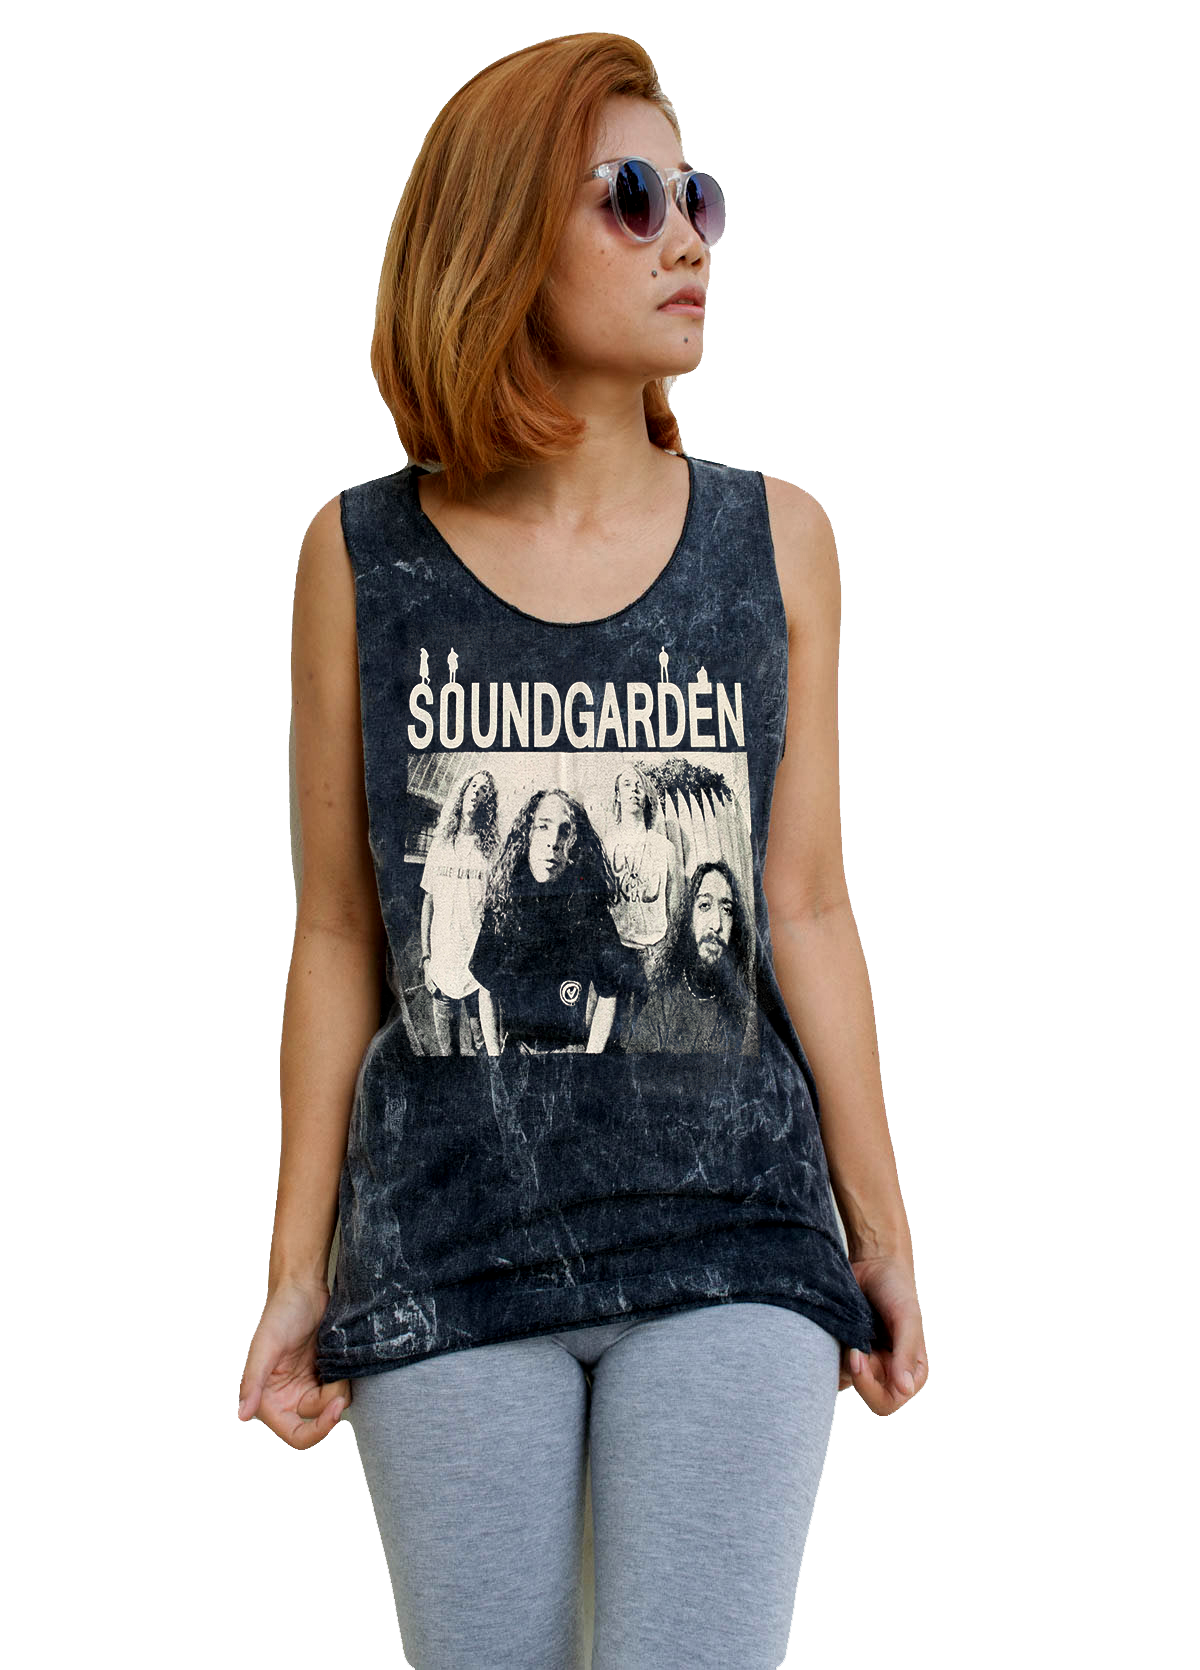 Unisex Soundgarden Tank-Top Singlet vest Sleeveless T-shirt